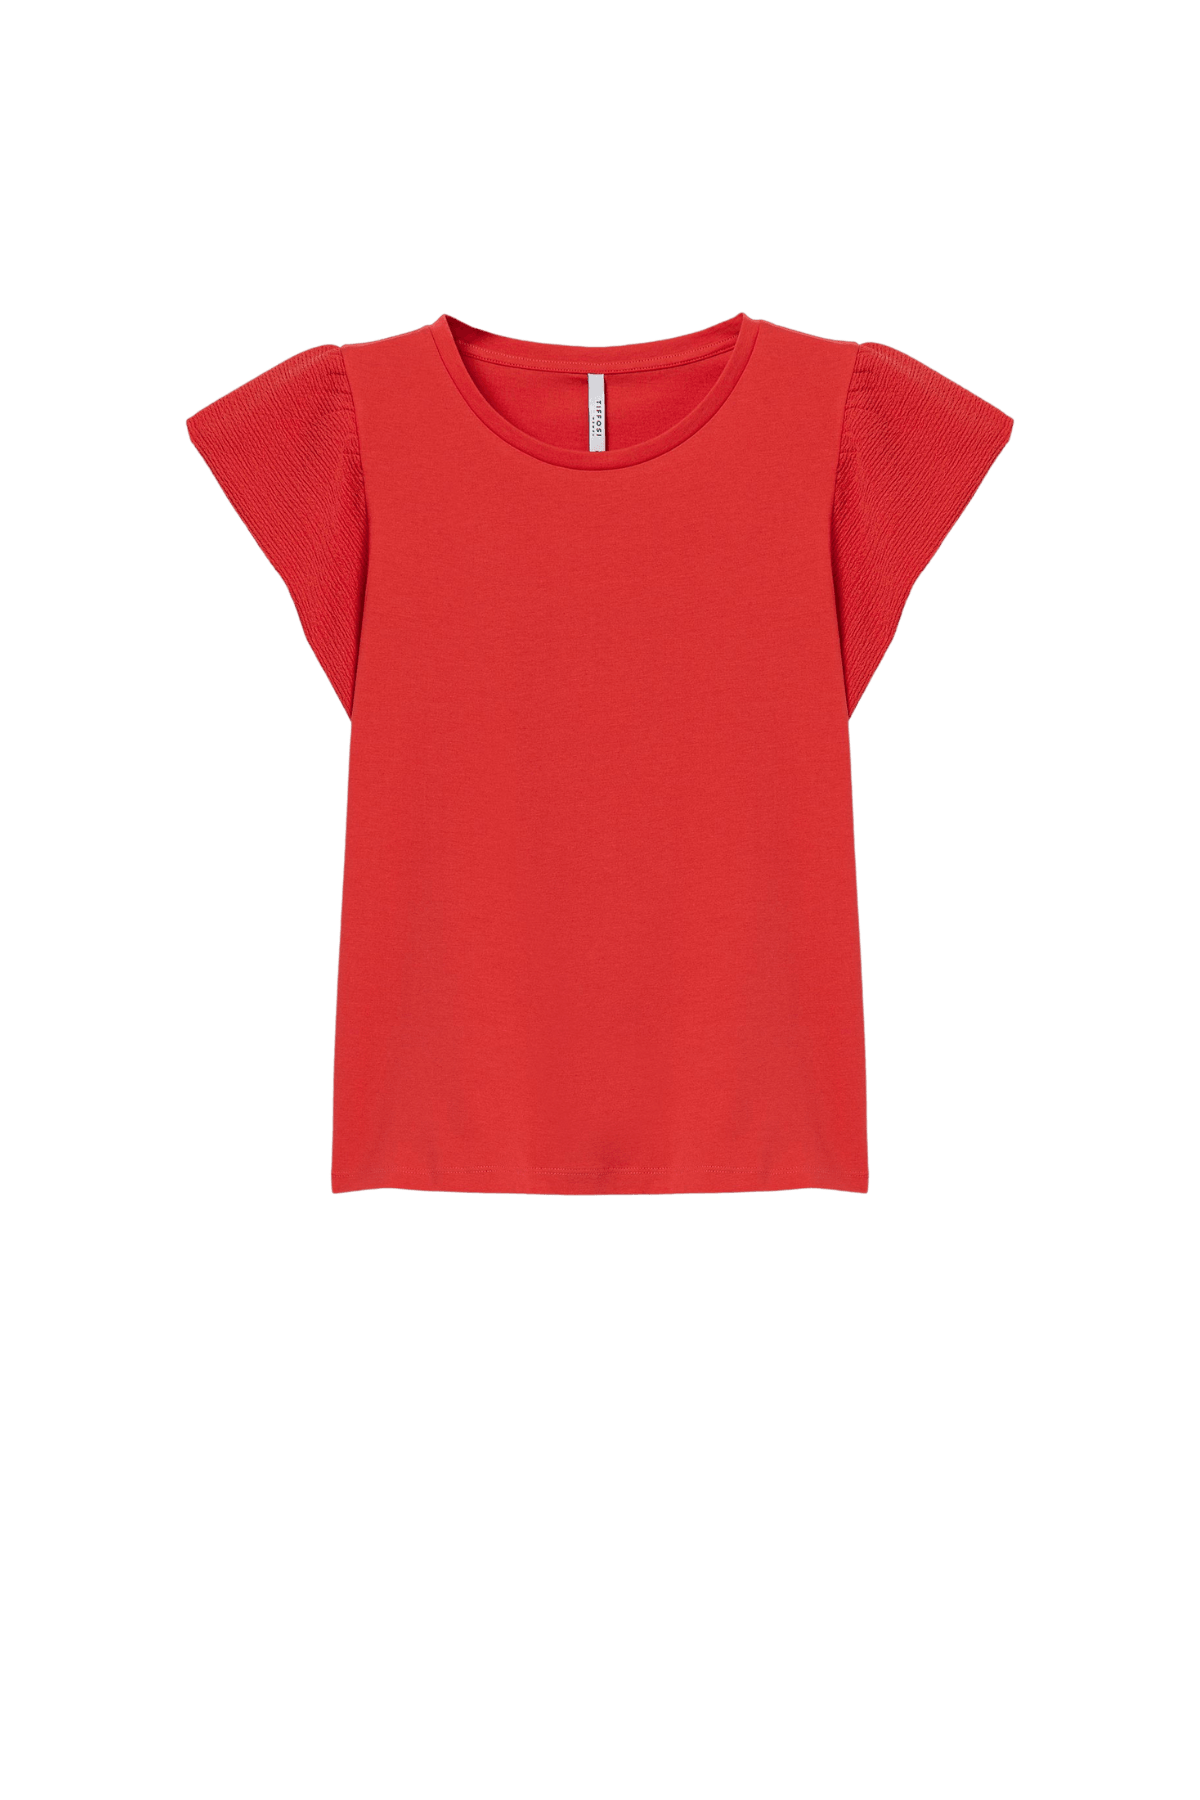 Camiseta TIFFOSI Kira 13 Roja - ECRU